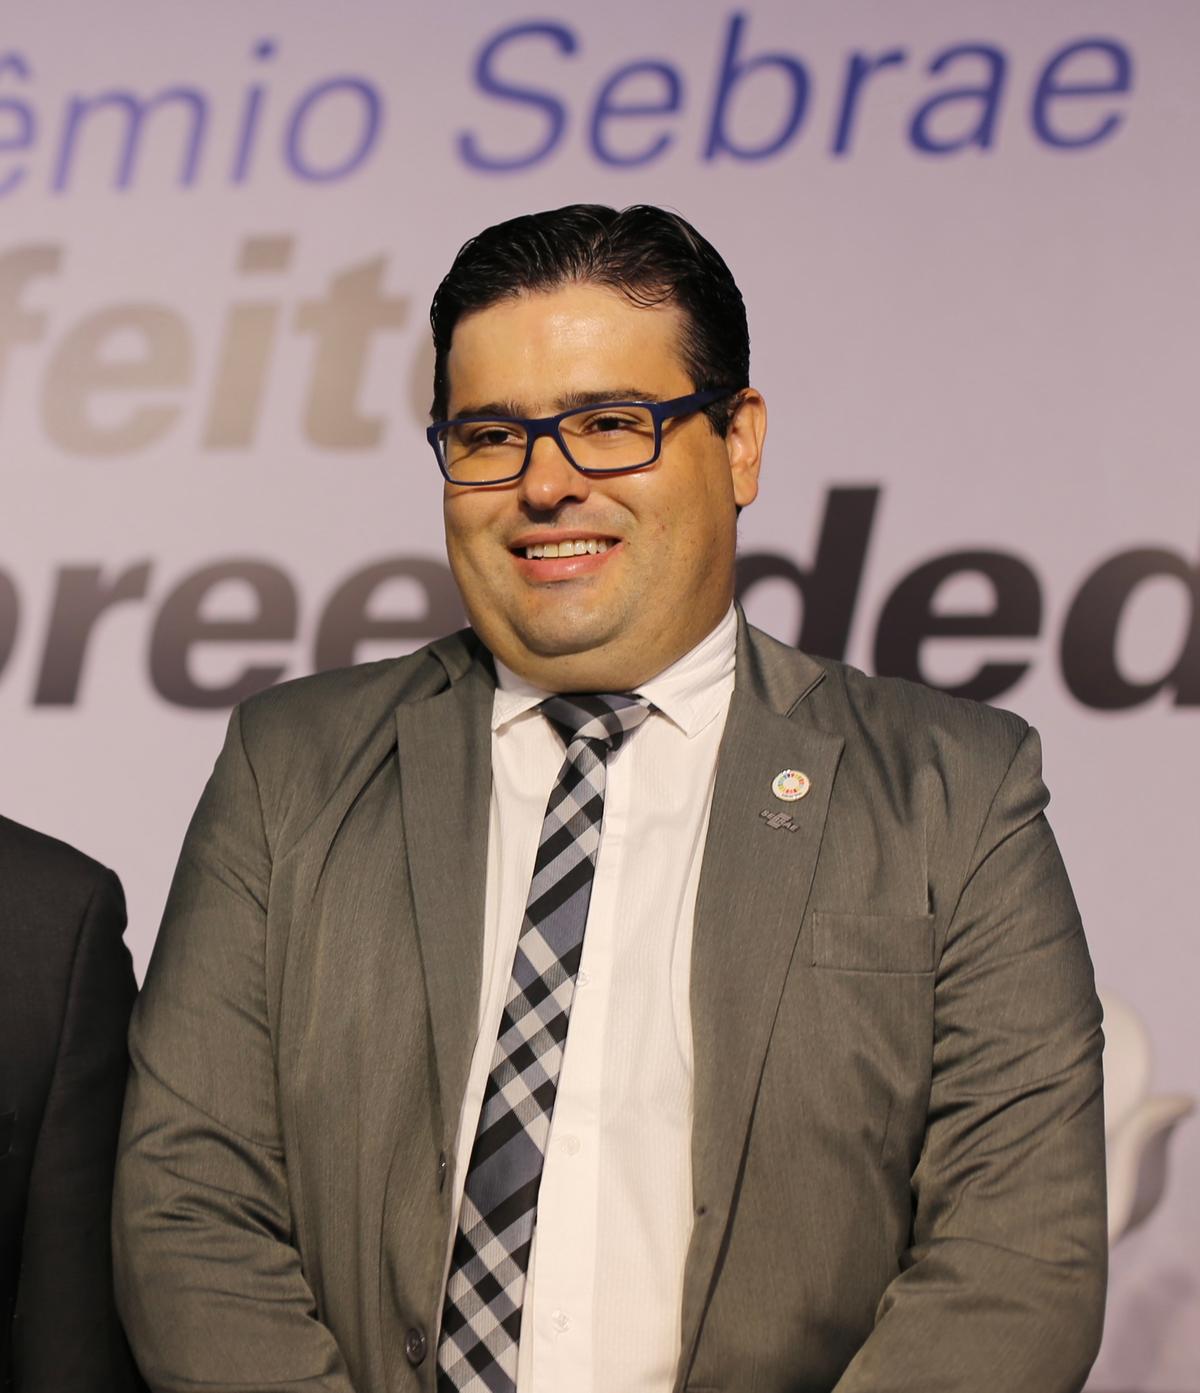 União do Sebrae com a AMM foi uma das ações mais importantes para o desenvolvimento de Minas, diz João Cruz (Comunicação/AMM)